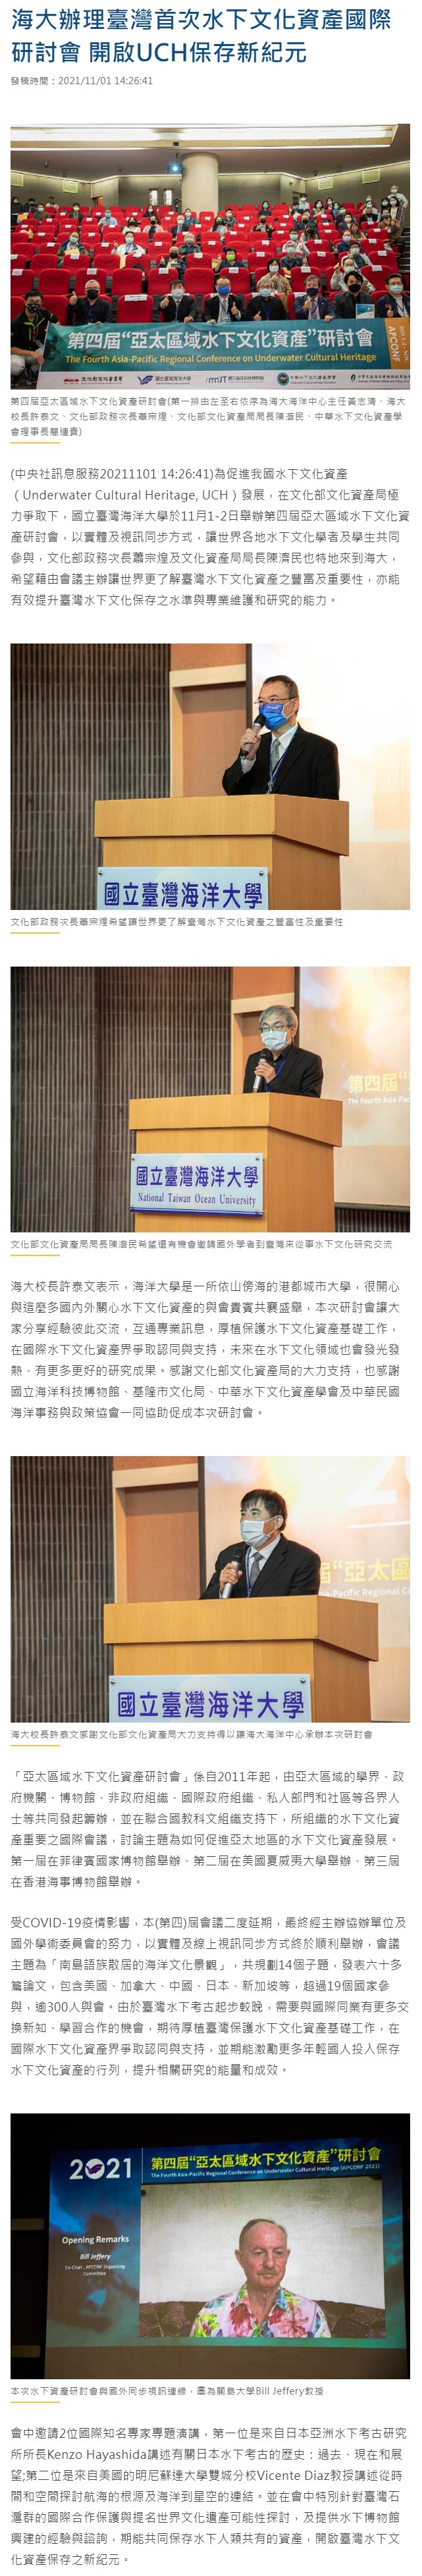 海大辦理臺灣首次水下文化資產國際研討會 開啟UCH保存新紀元